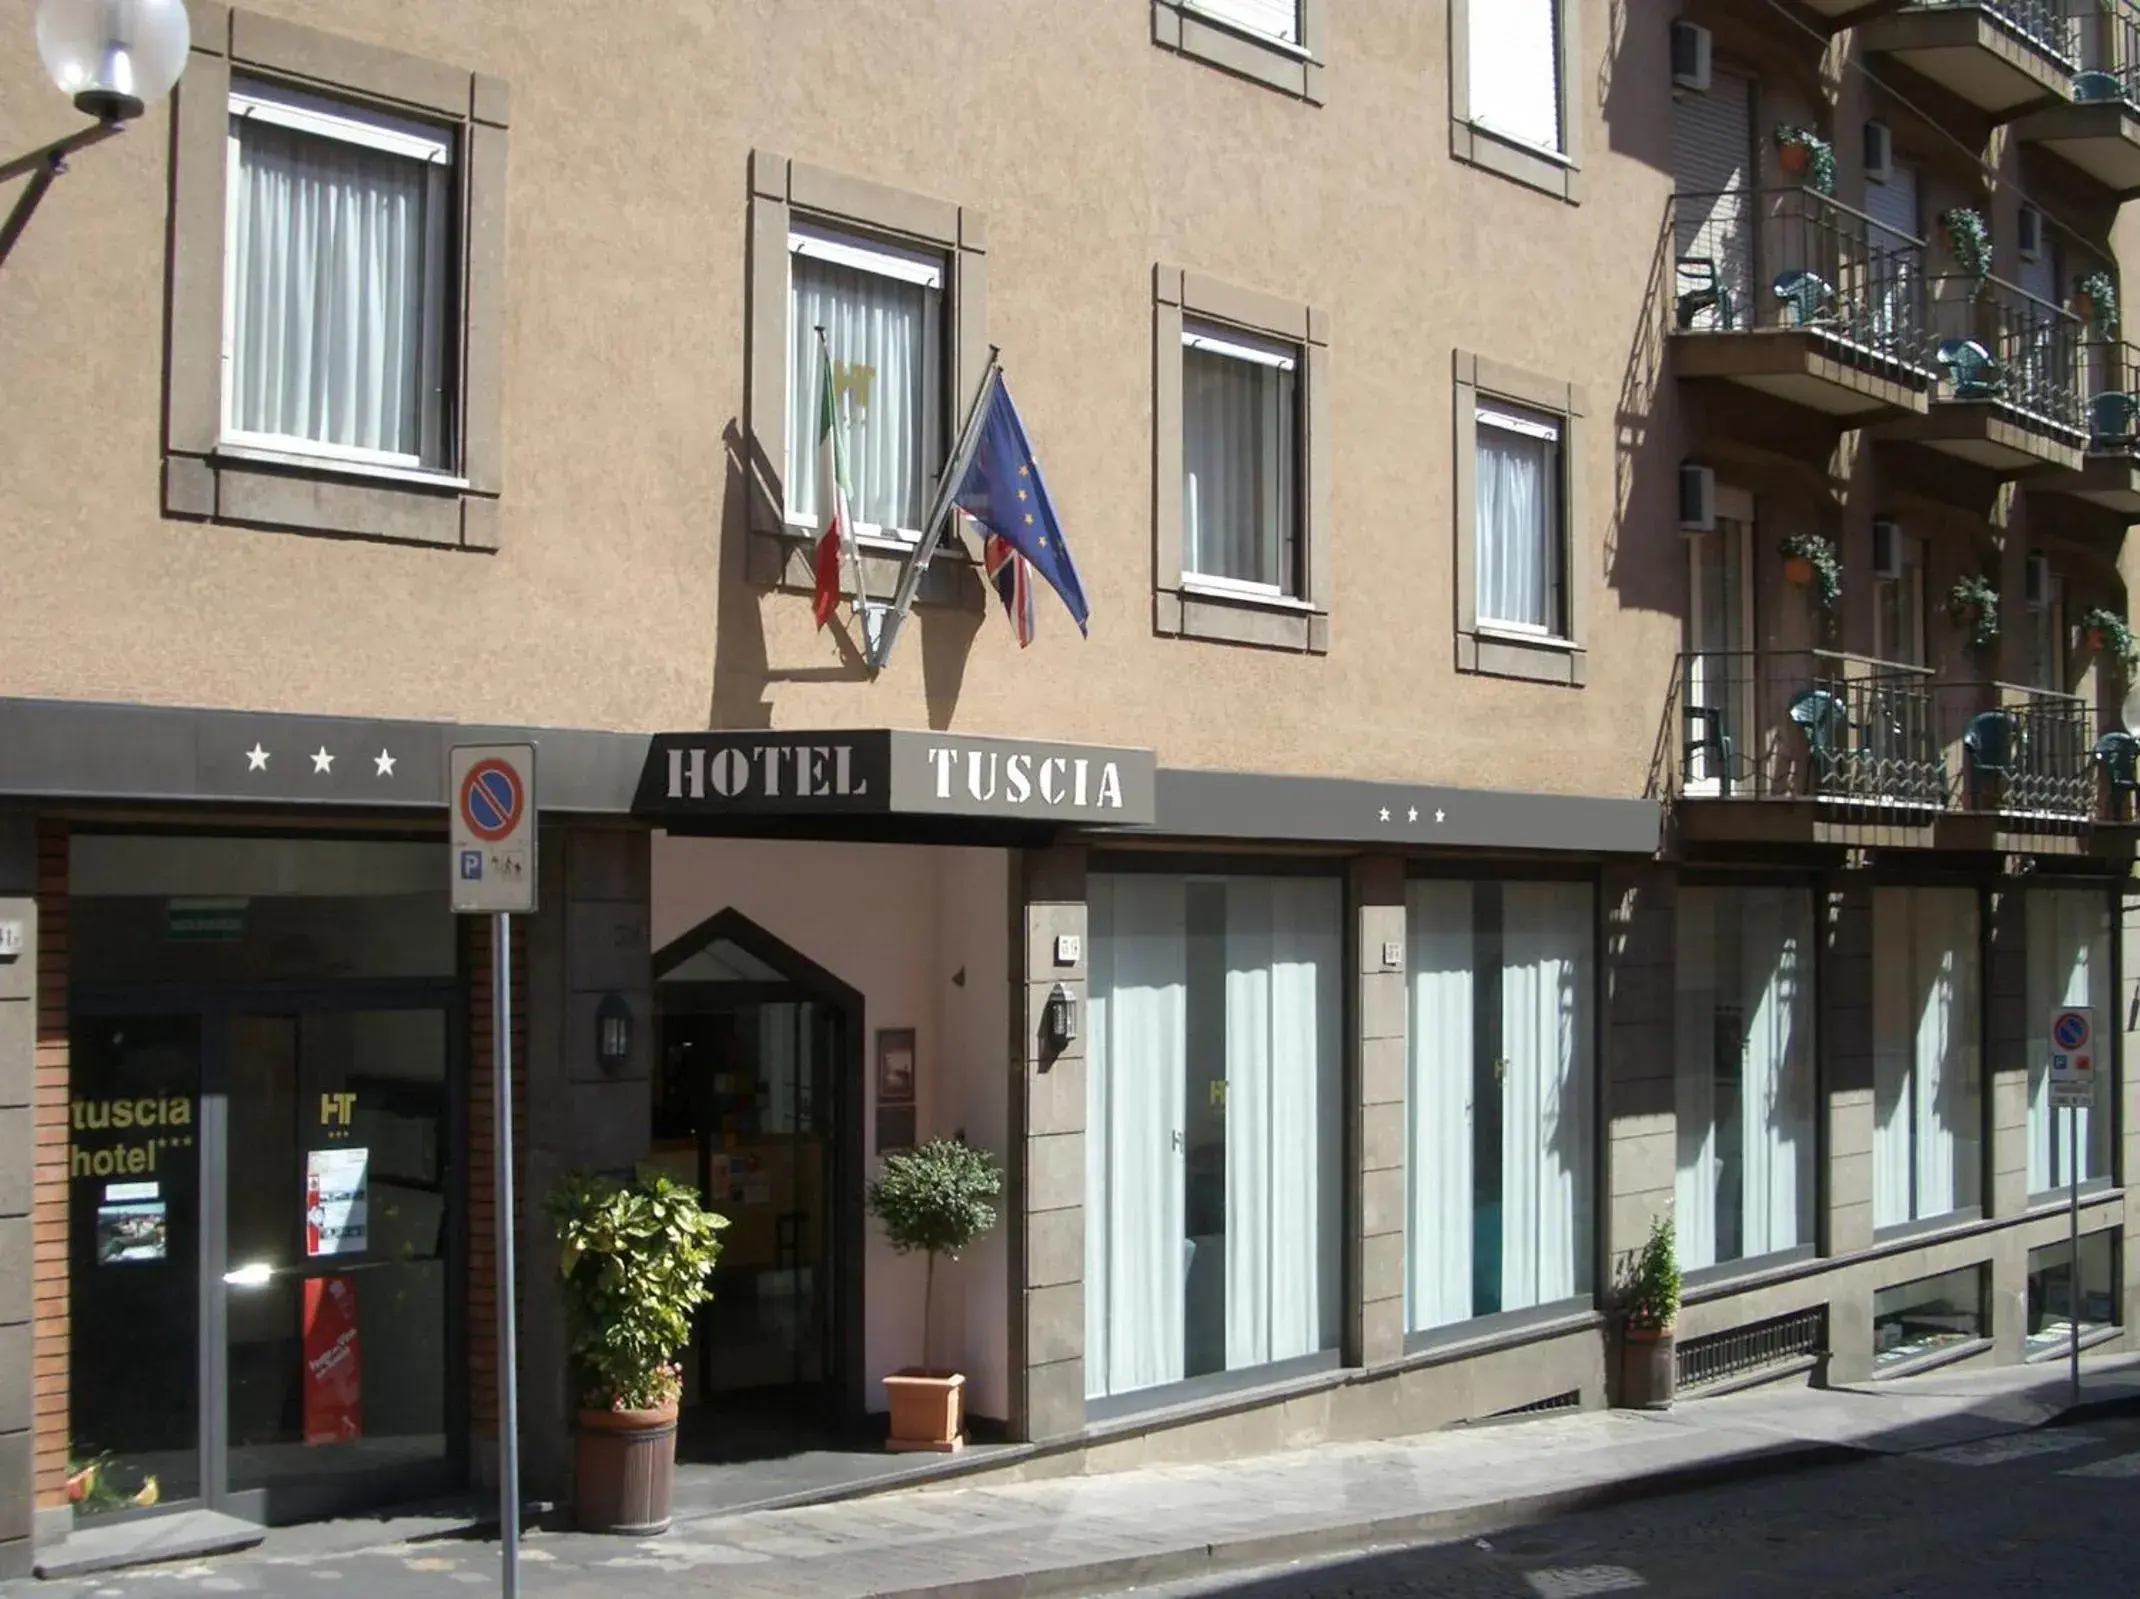 Facade/entrance in Tuscia Hotel